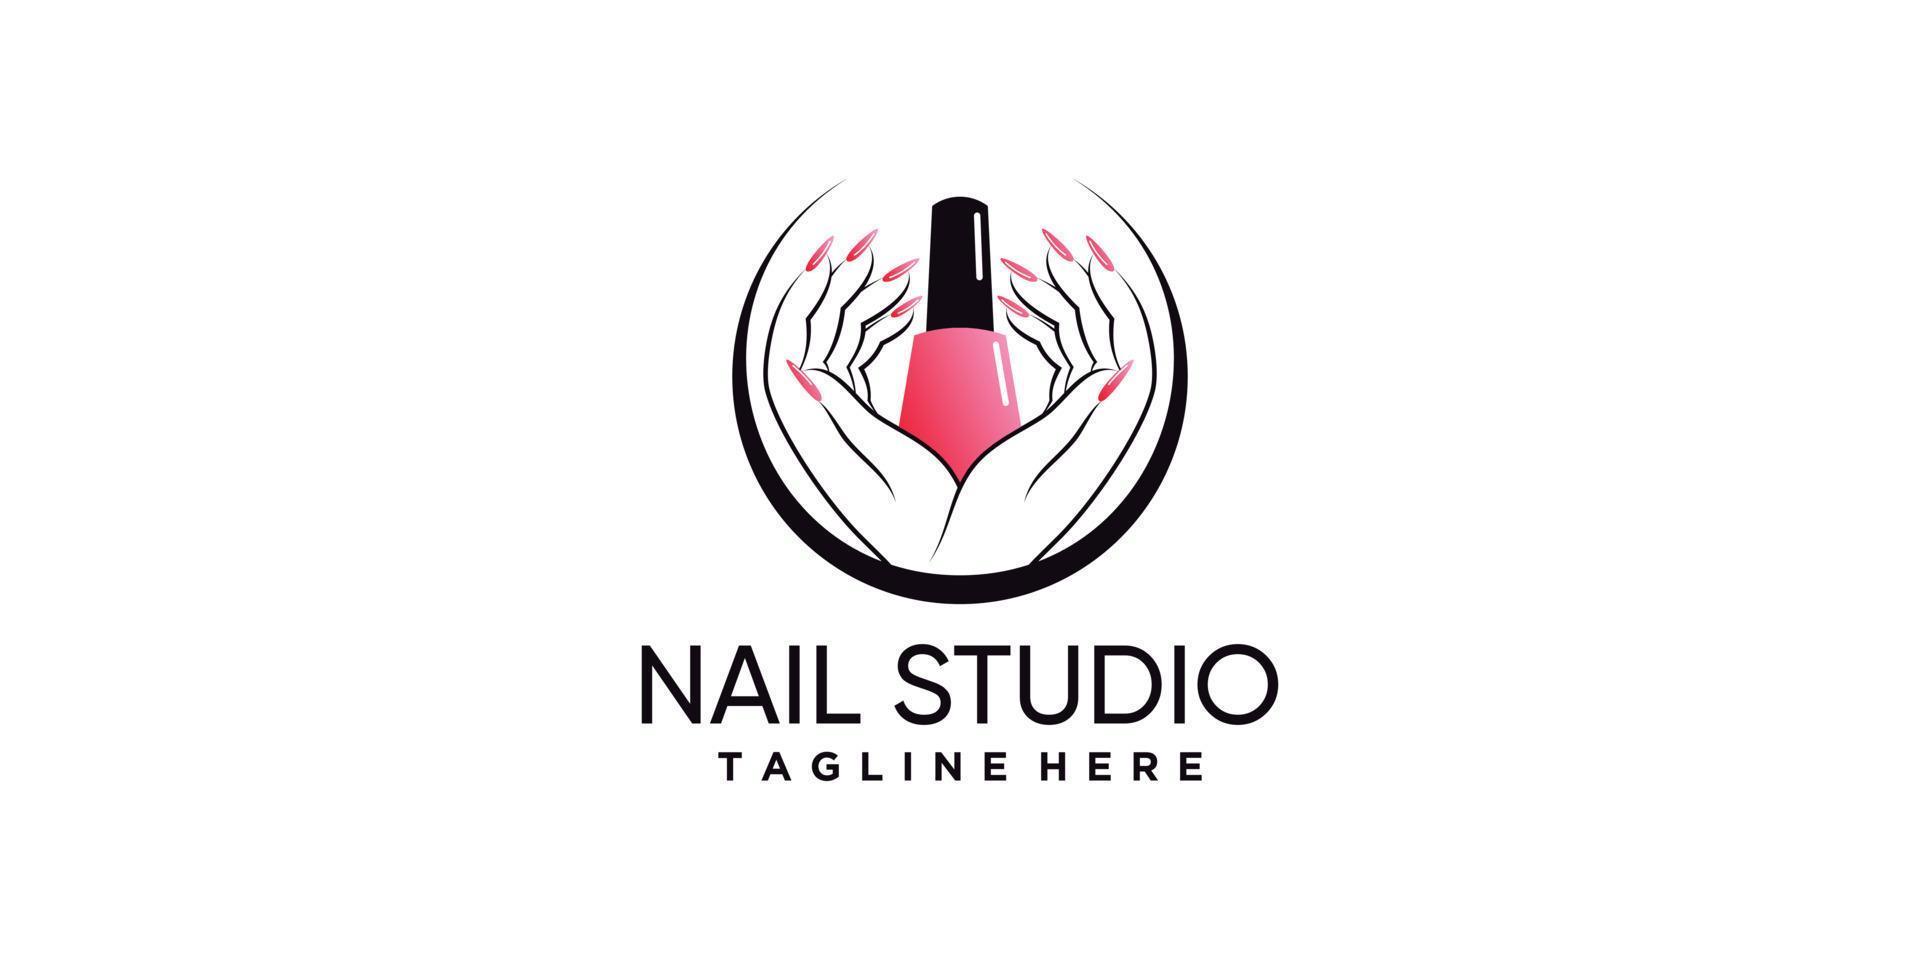 Nagellack oder Nagelstudio-Logo-Design mit kreativem Element und einzigartigem Konzept-Premium-Vektor vektor